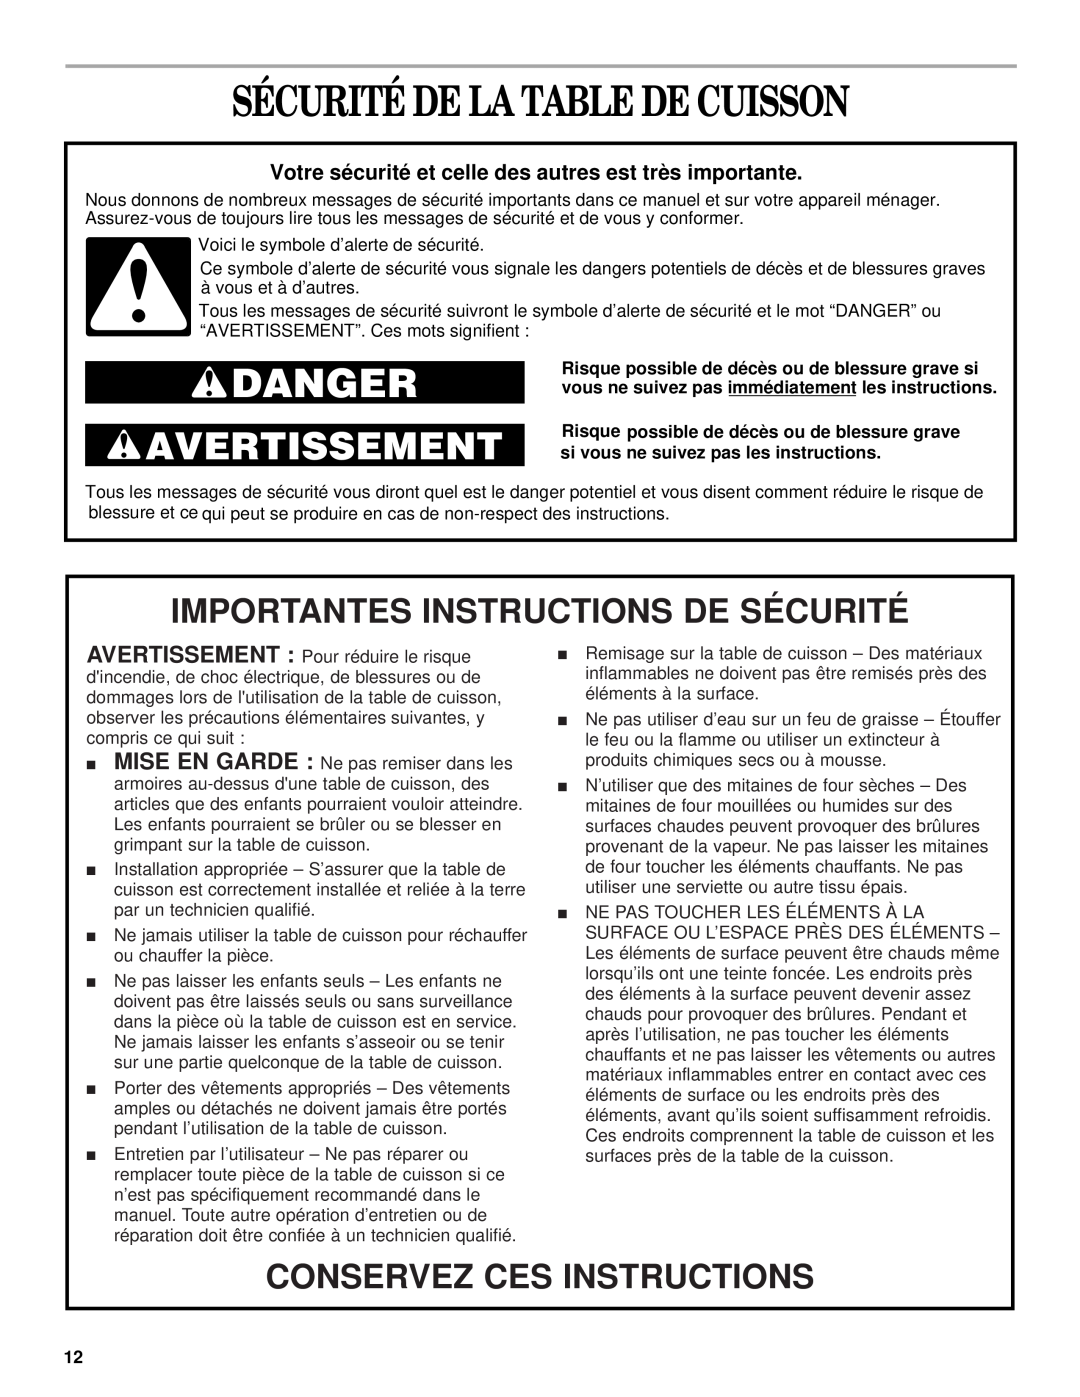 Whirlpool RCS2002 manual Sécurité De La Table De Cuisson, Importantes Instructions De Sécurité, Conservez Ces Instructions 